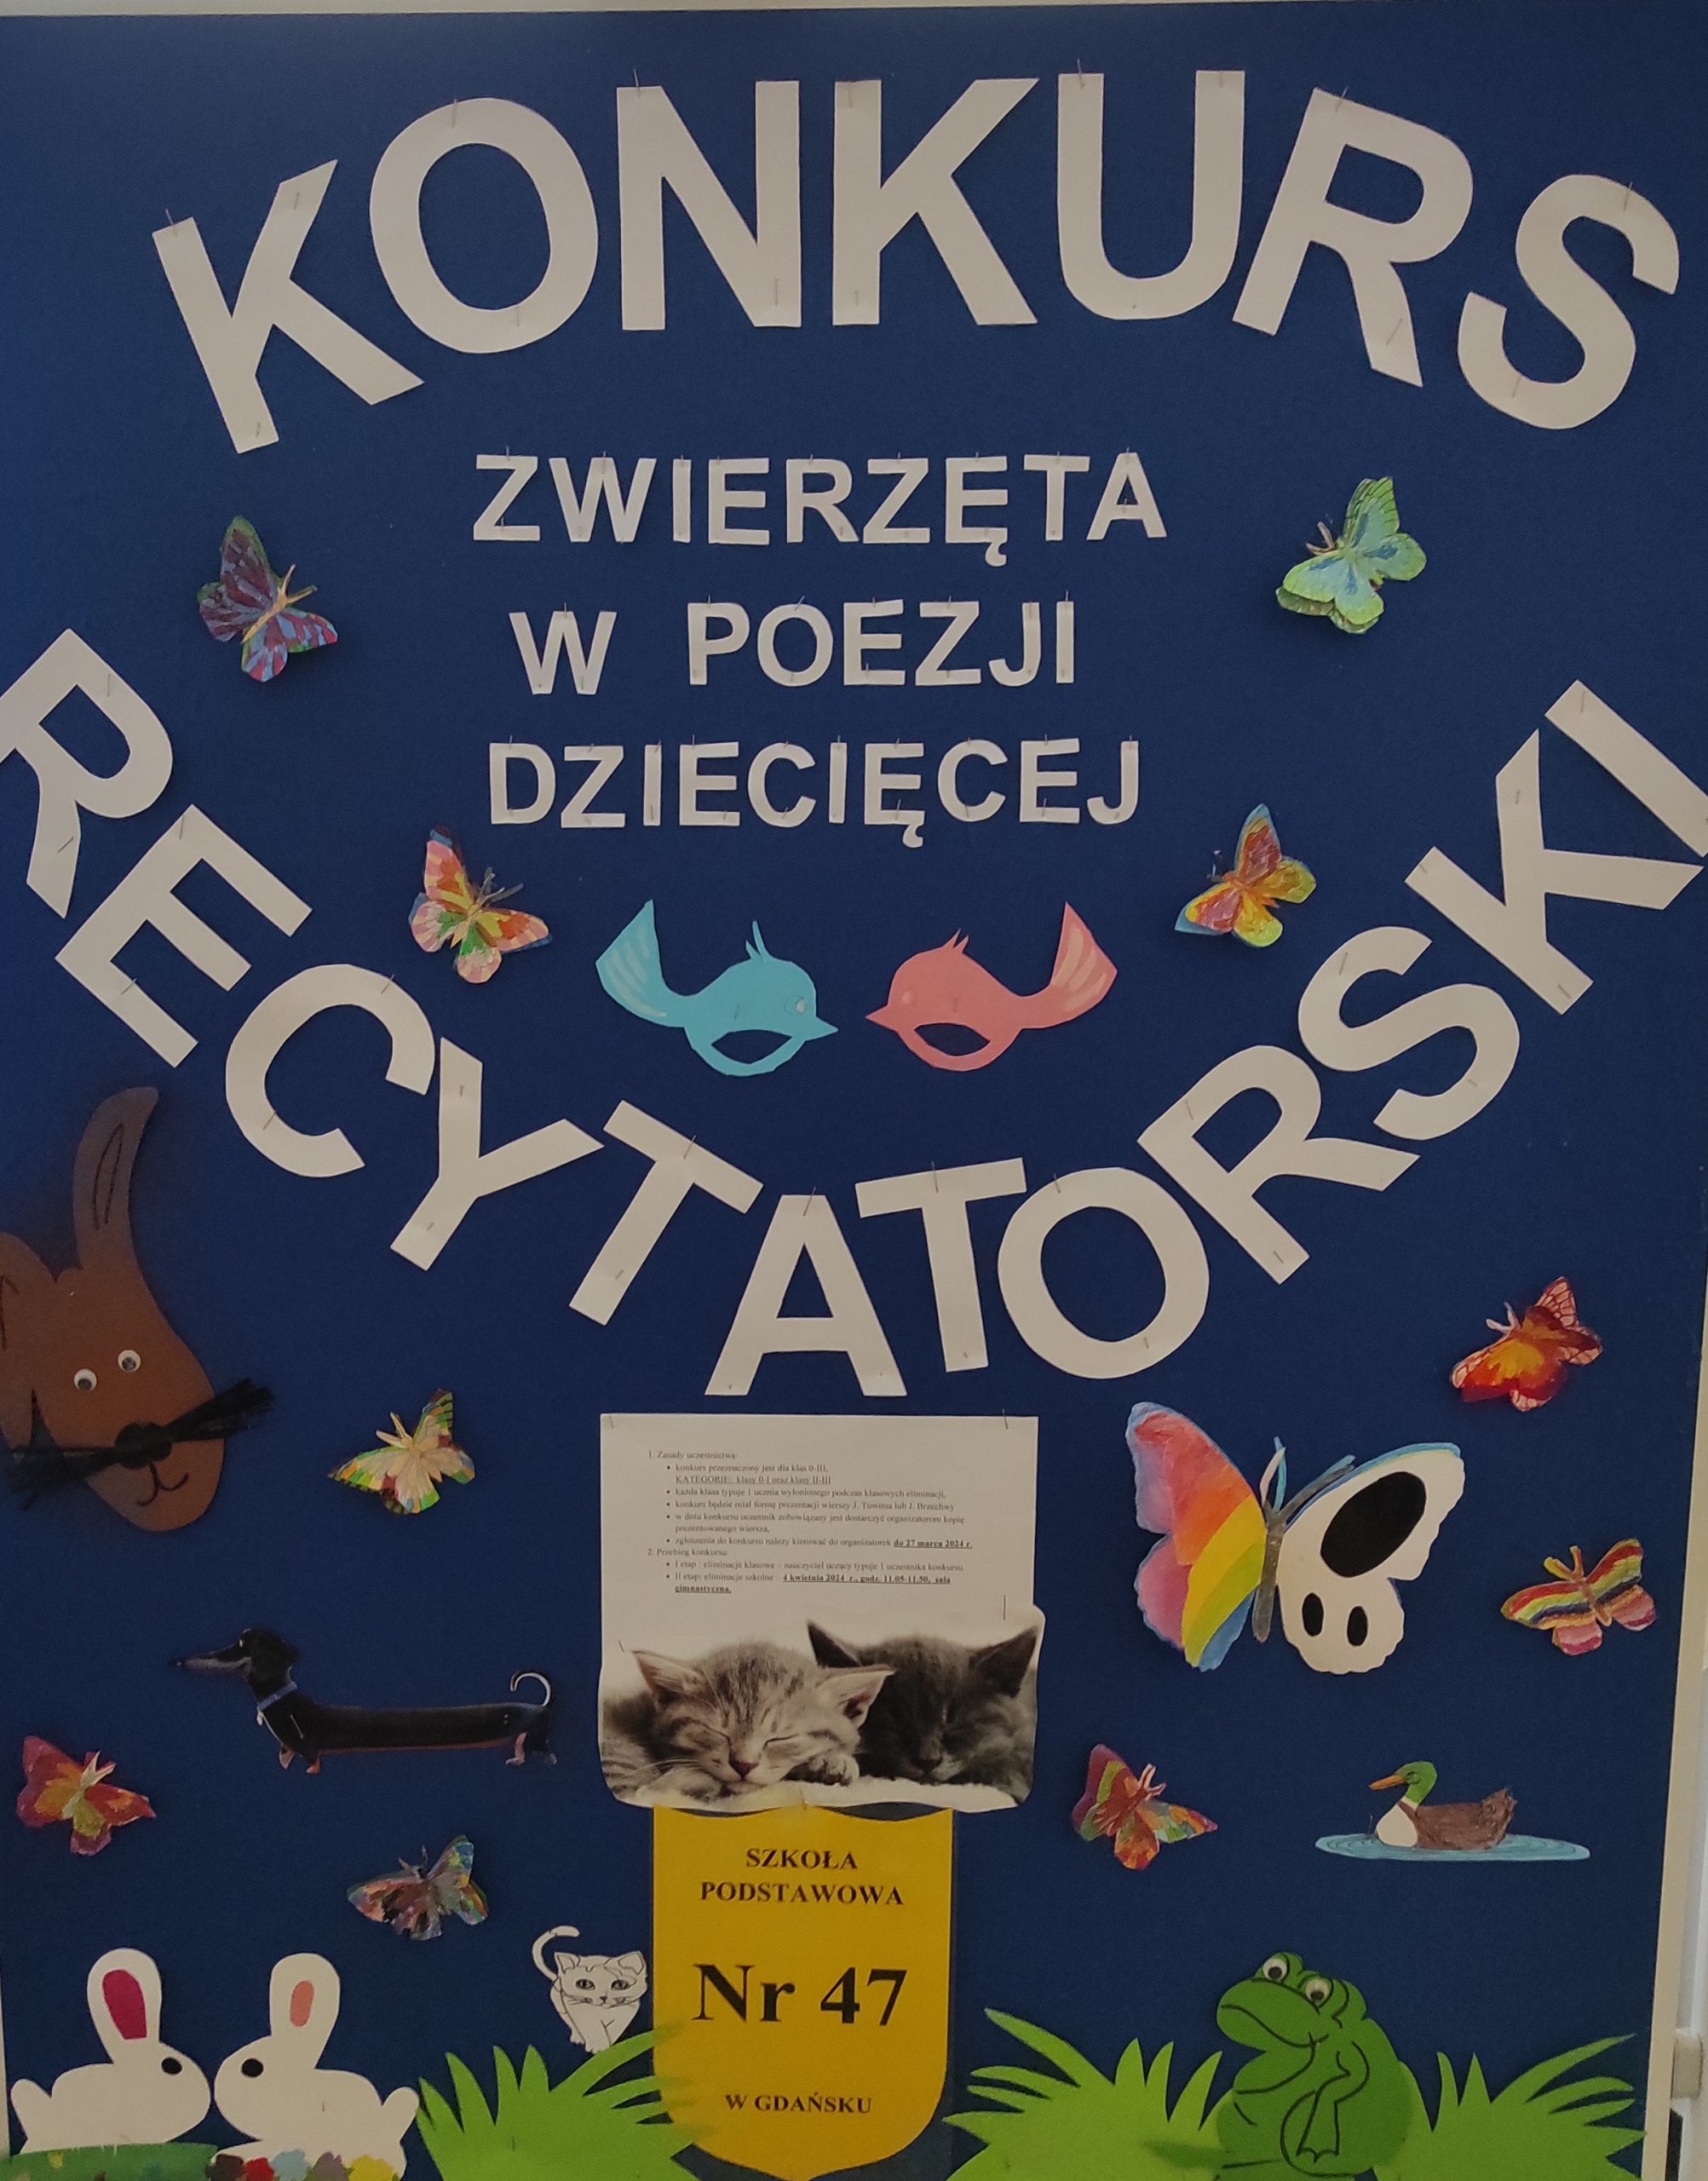 Tablica informacyjna z napisem KONKURS RECYTATORSKI "ZWIERZĘTA W POEZJI DZIECIĘCEJ" i kolorowymi obrazkami zwierząt.